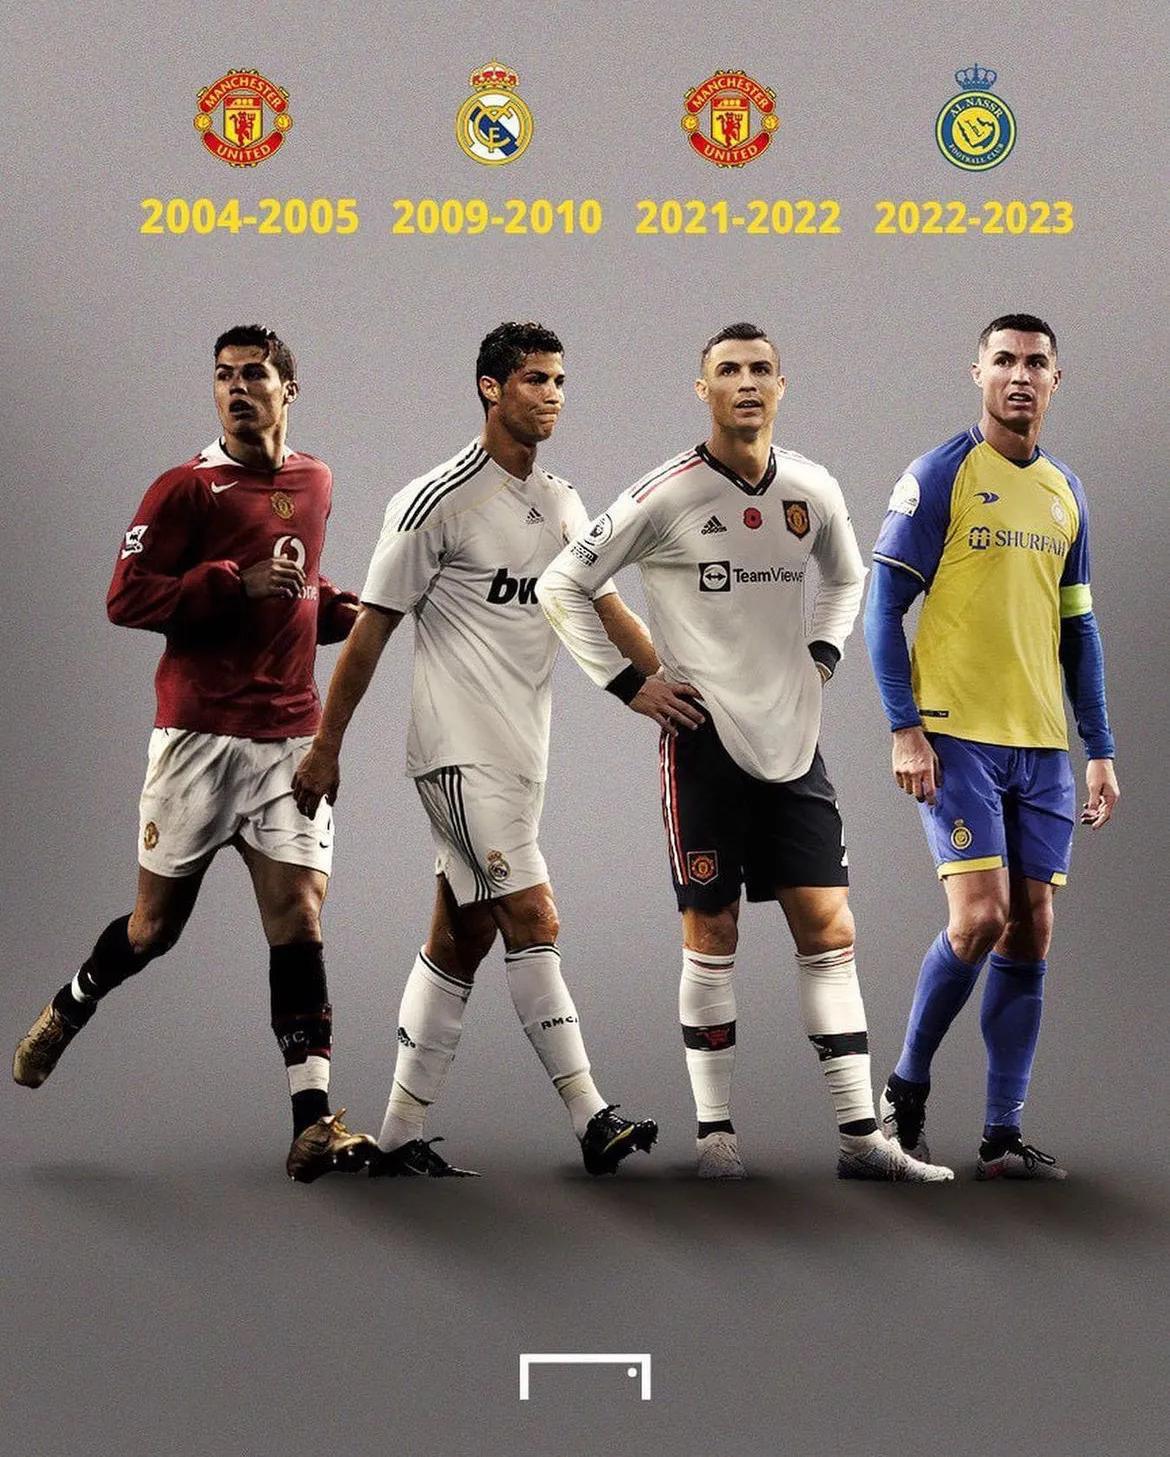 C罗职业生涯经历的4个四大皆空赛季

曼联（2004-05赛季）
皇马（2009(1)